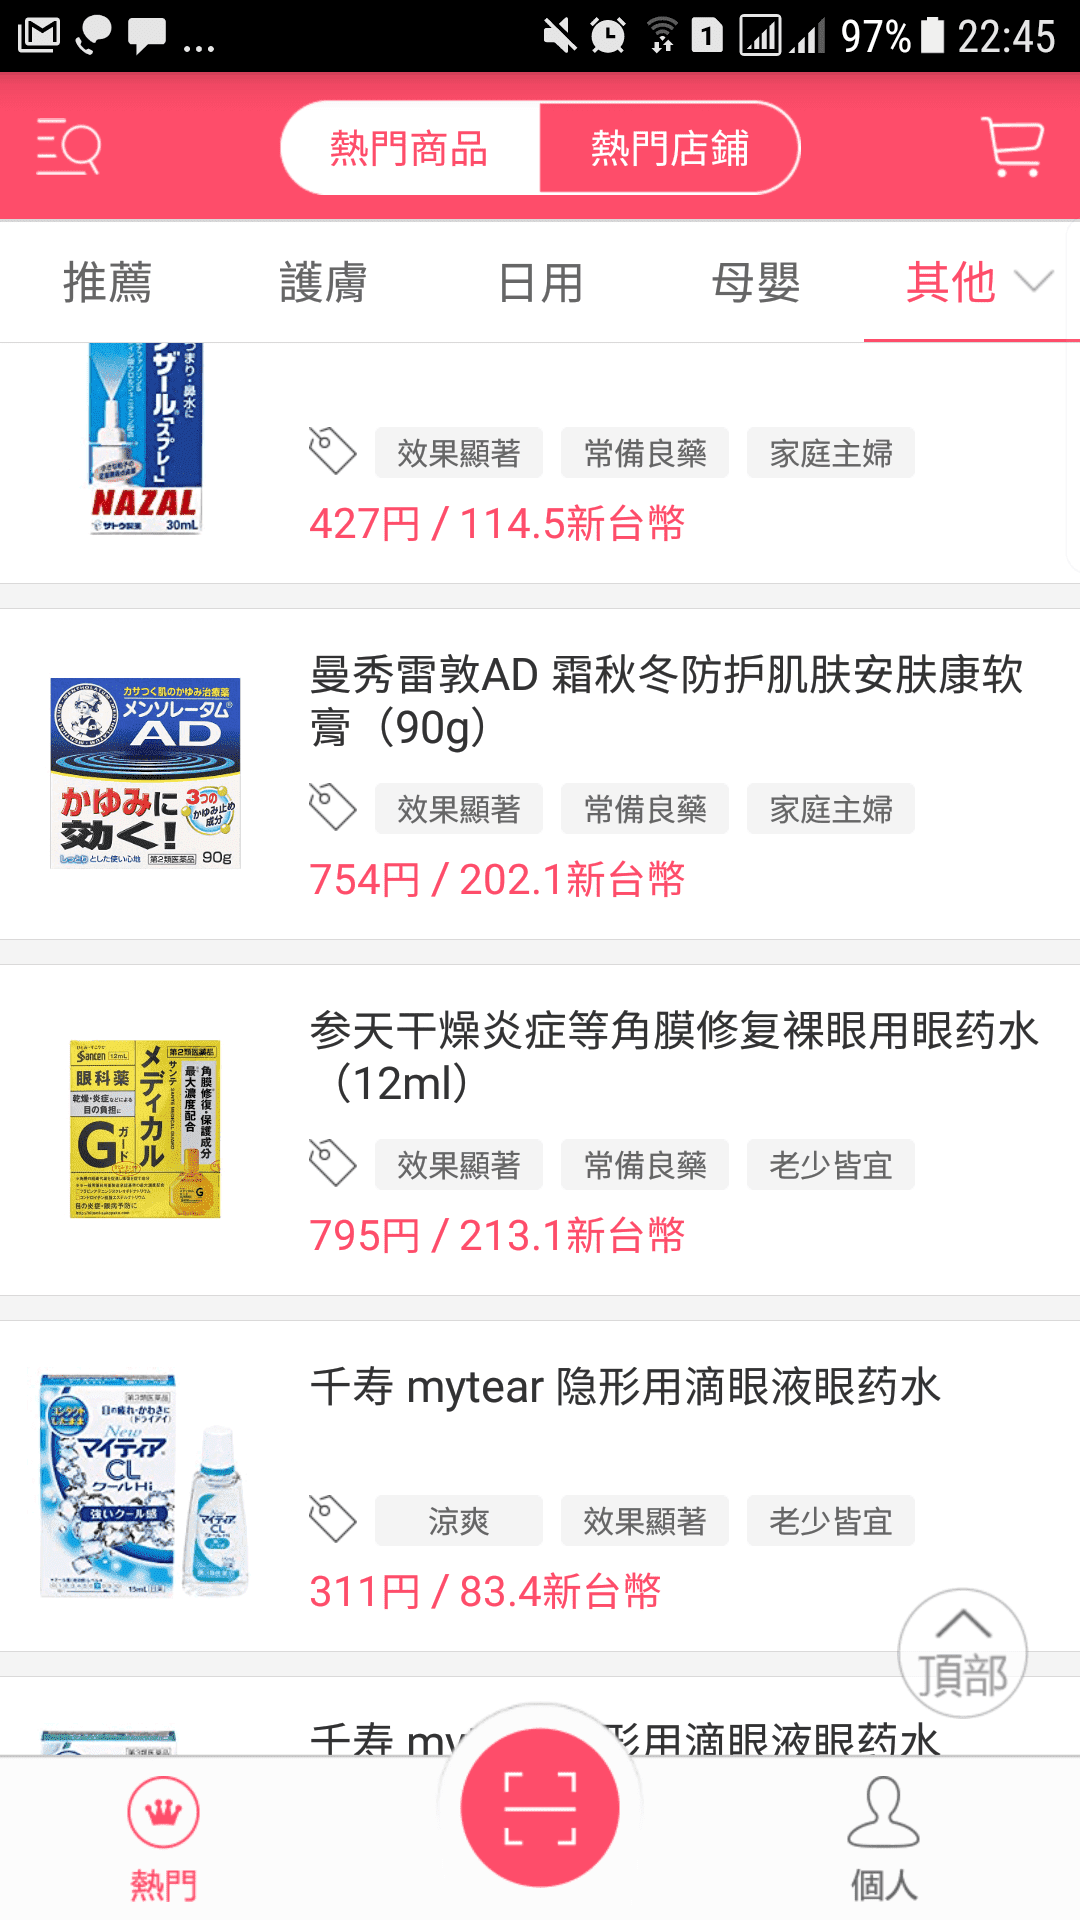 [免費app]日本購物掃一掃｜日本採購藥妝、物品價格參考～～